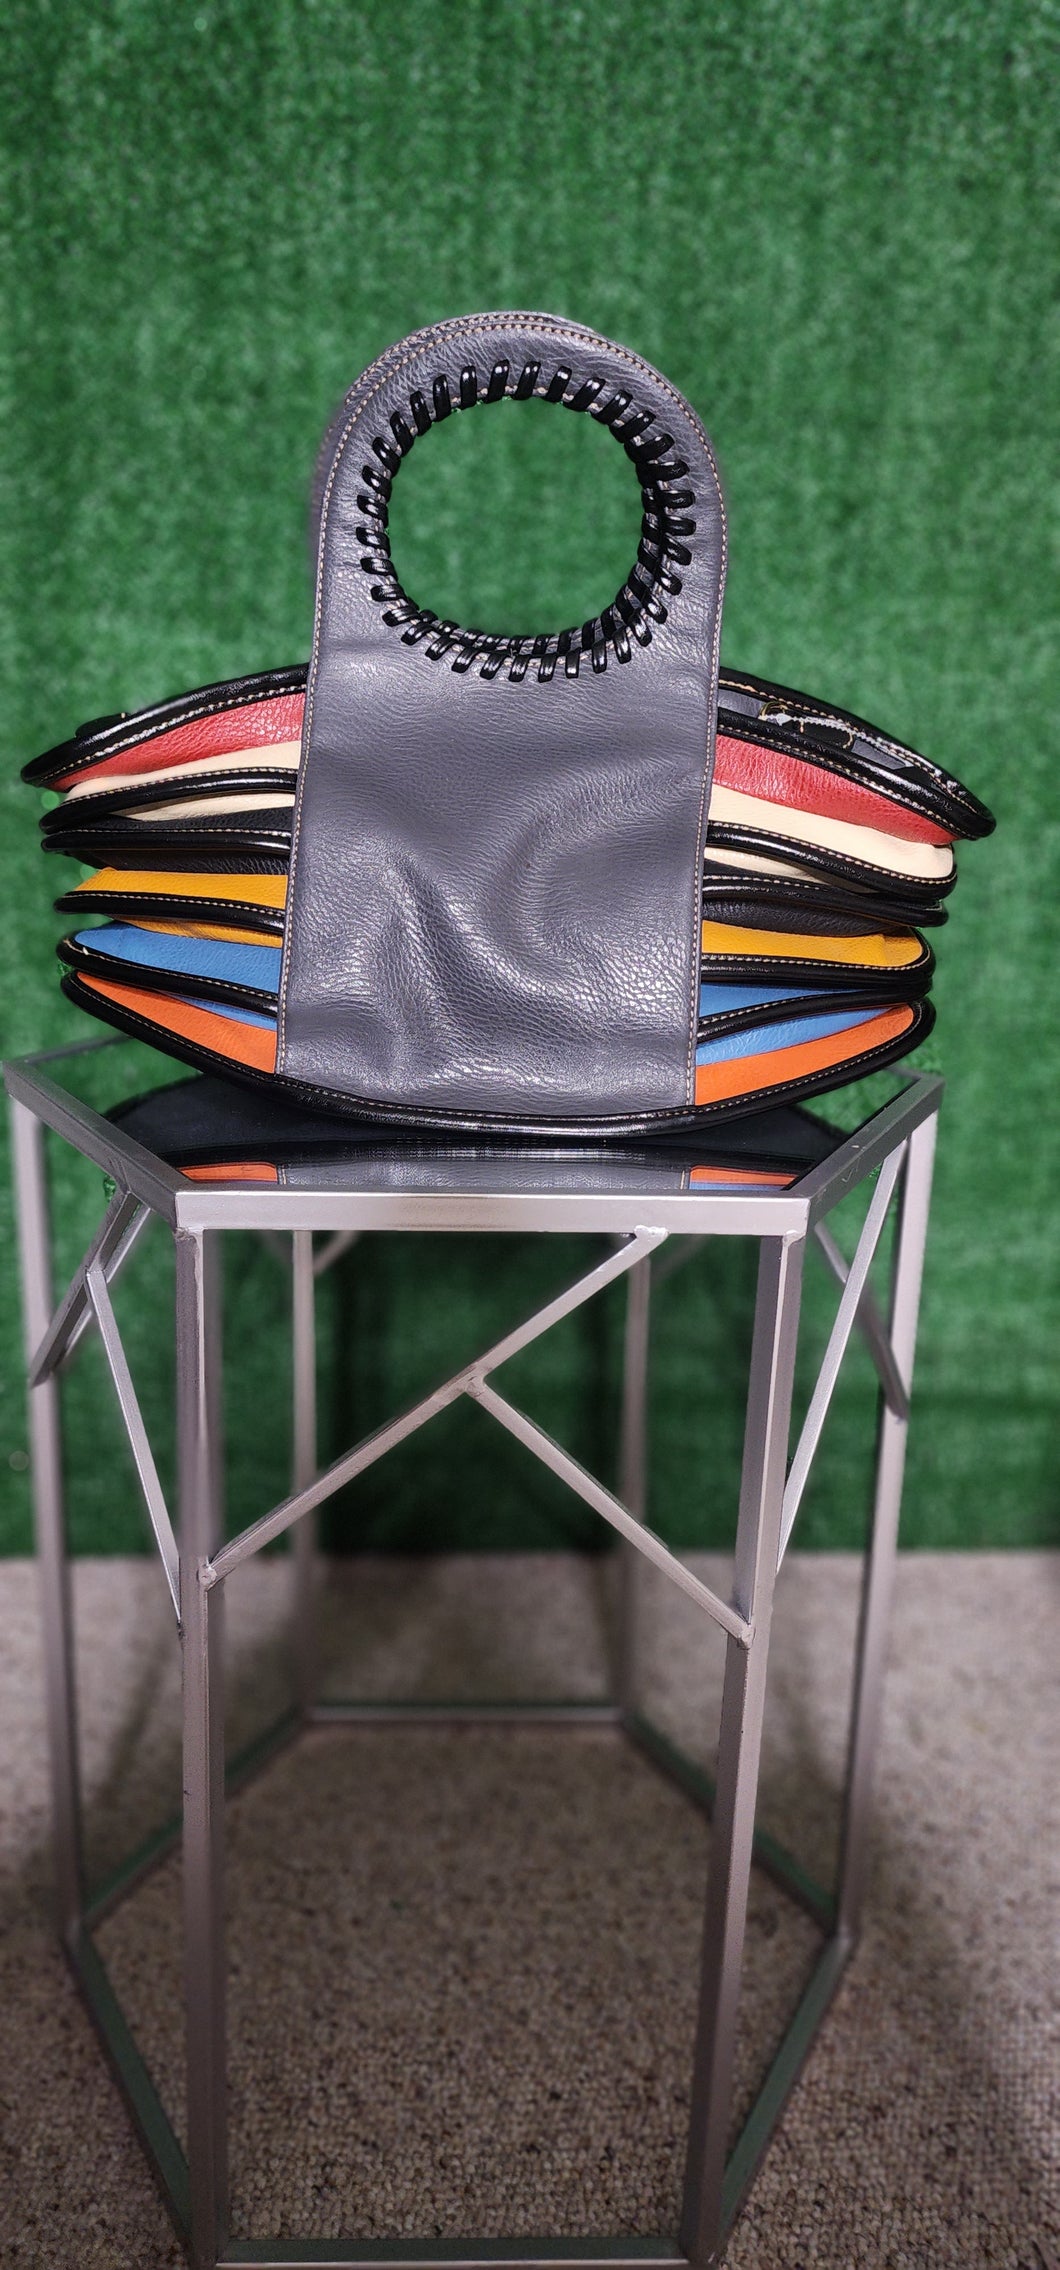 Multicolor/Multilayered handbag